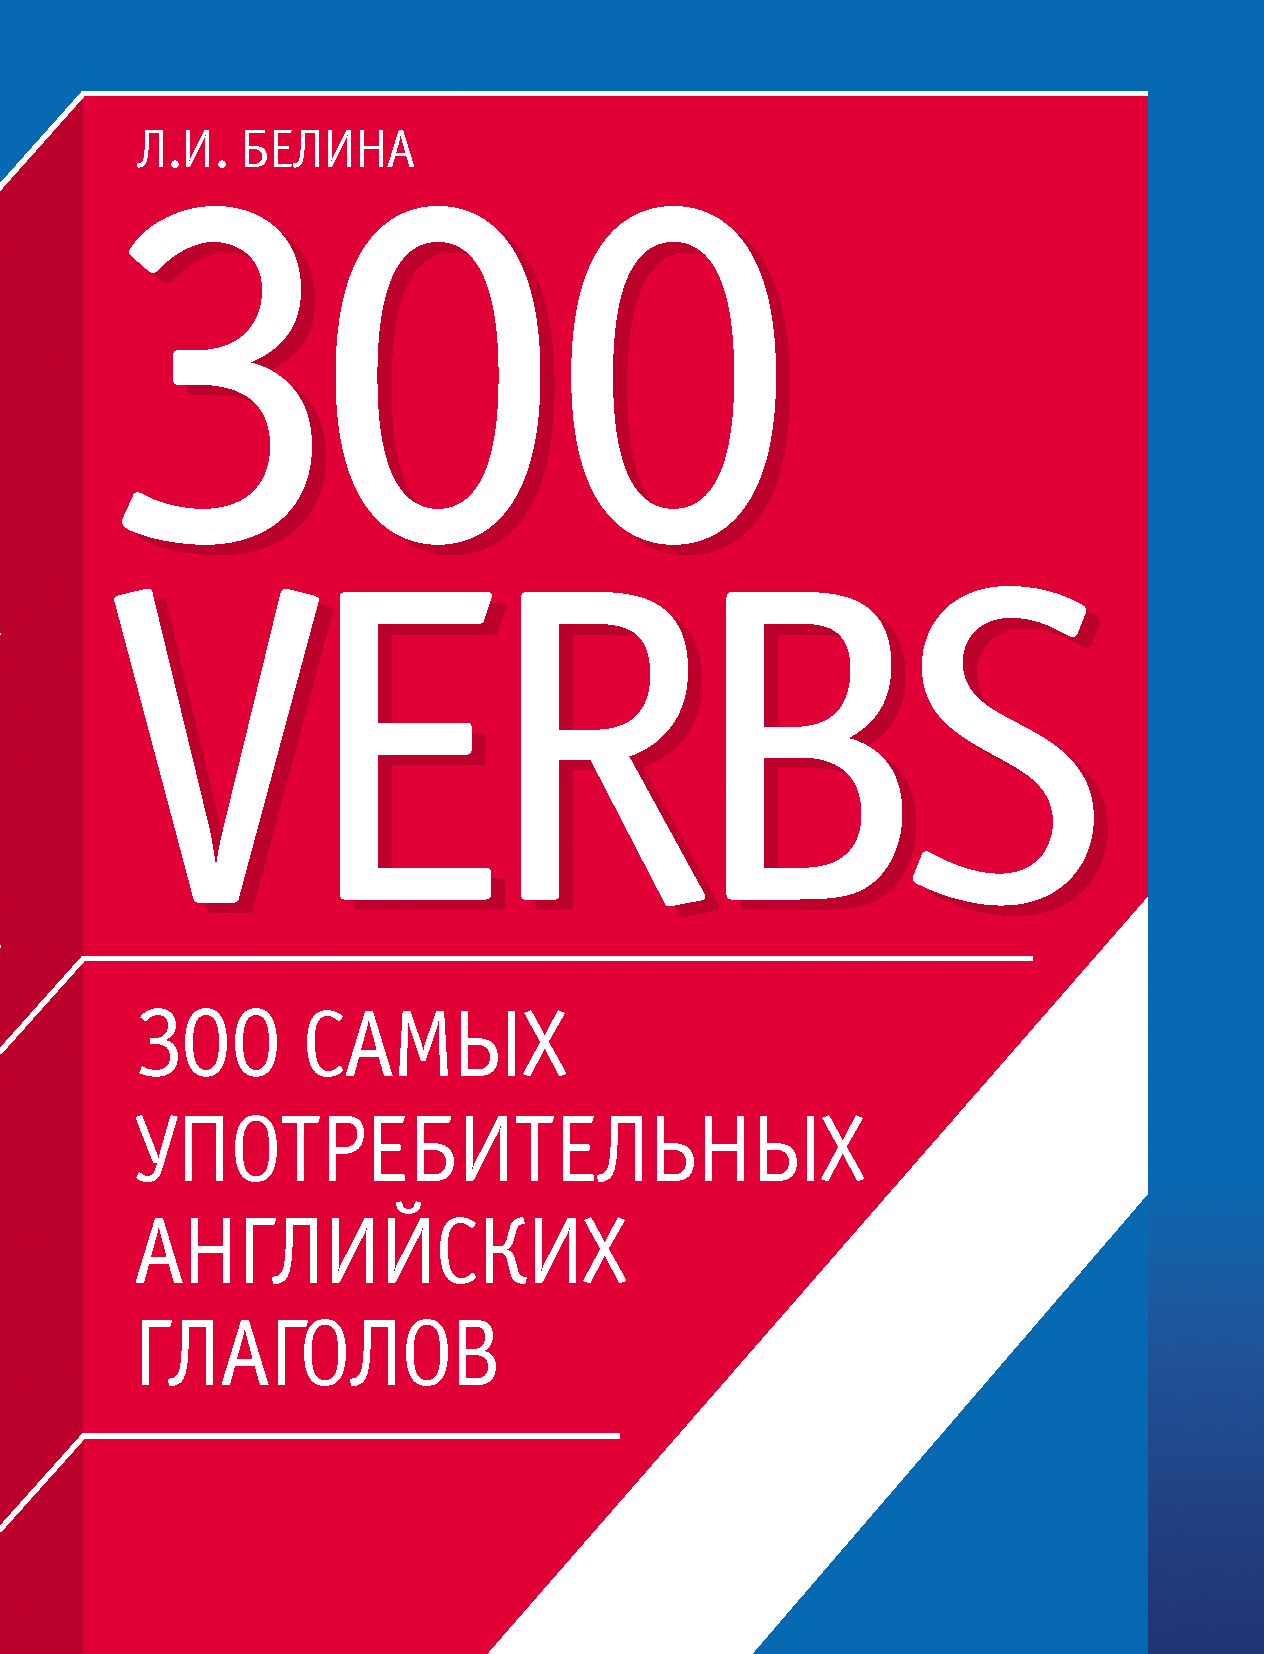 300самых употребительных английских глаголов. 300 verbs